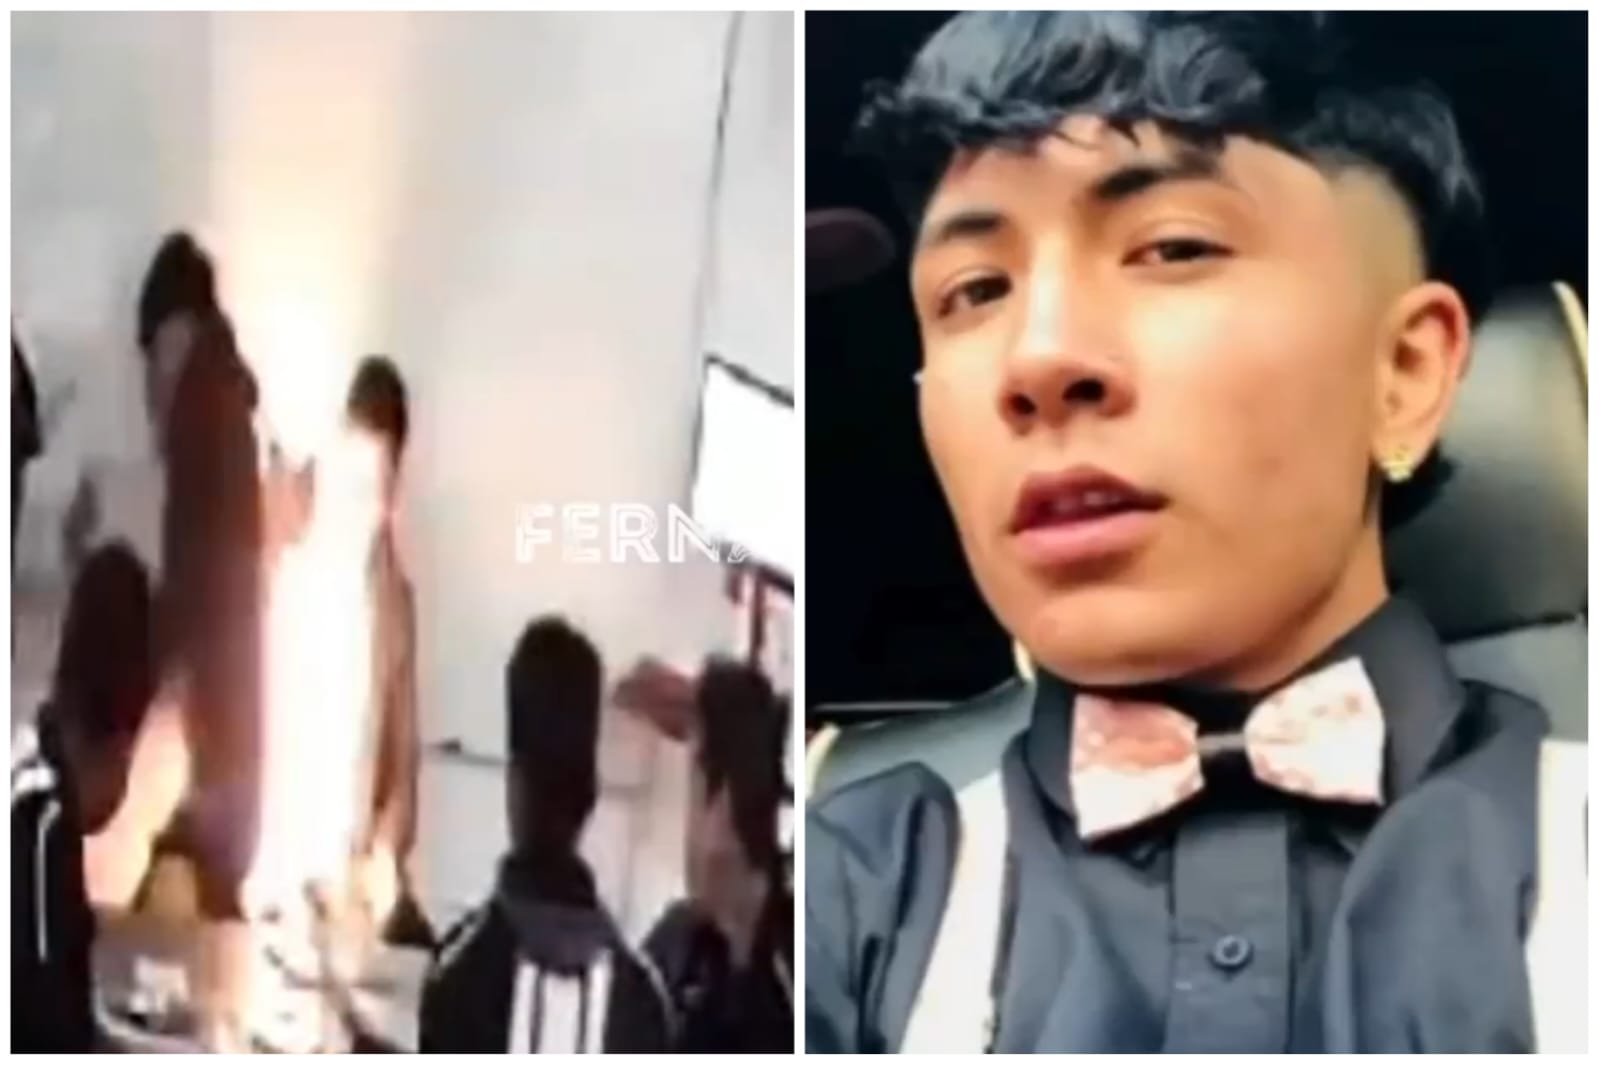 Momento exacto donde prenden fuego a Cristian Carranza |VIDEO